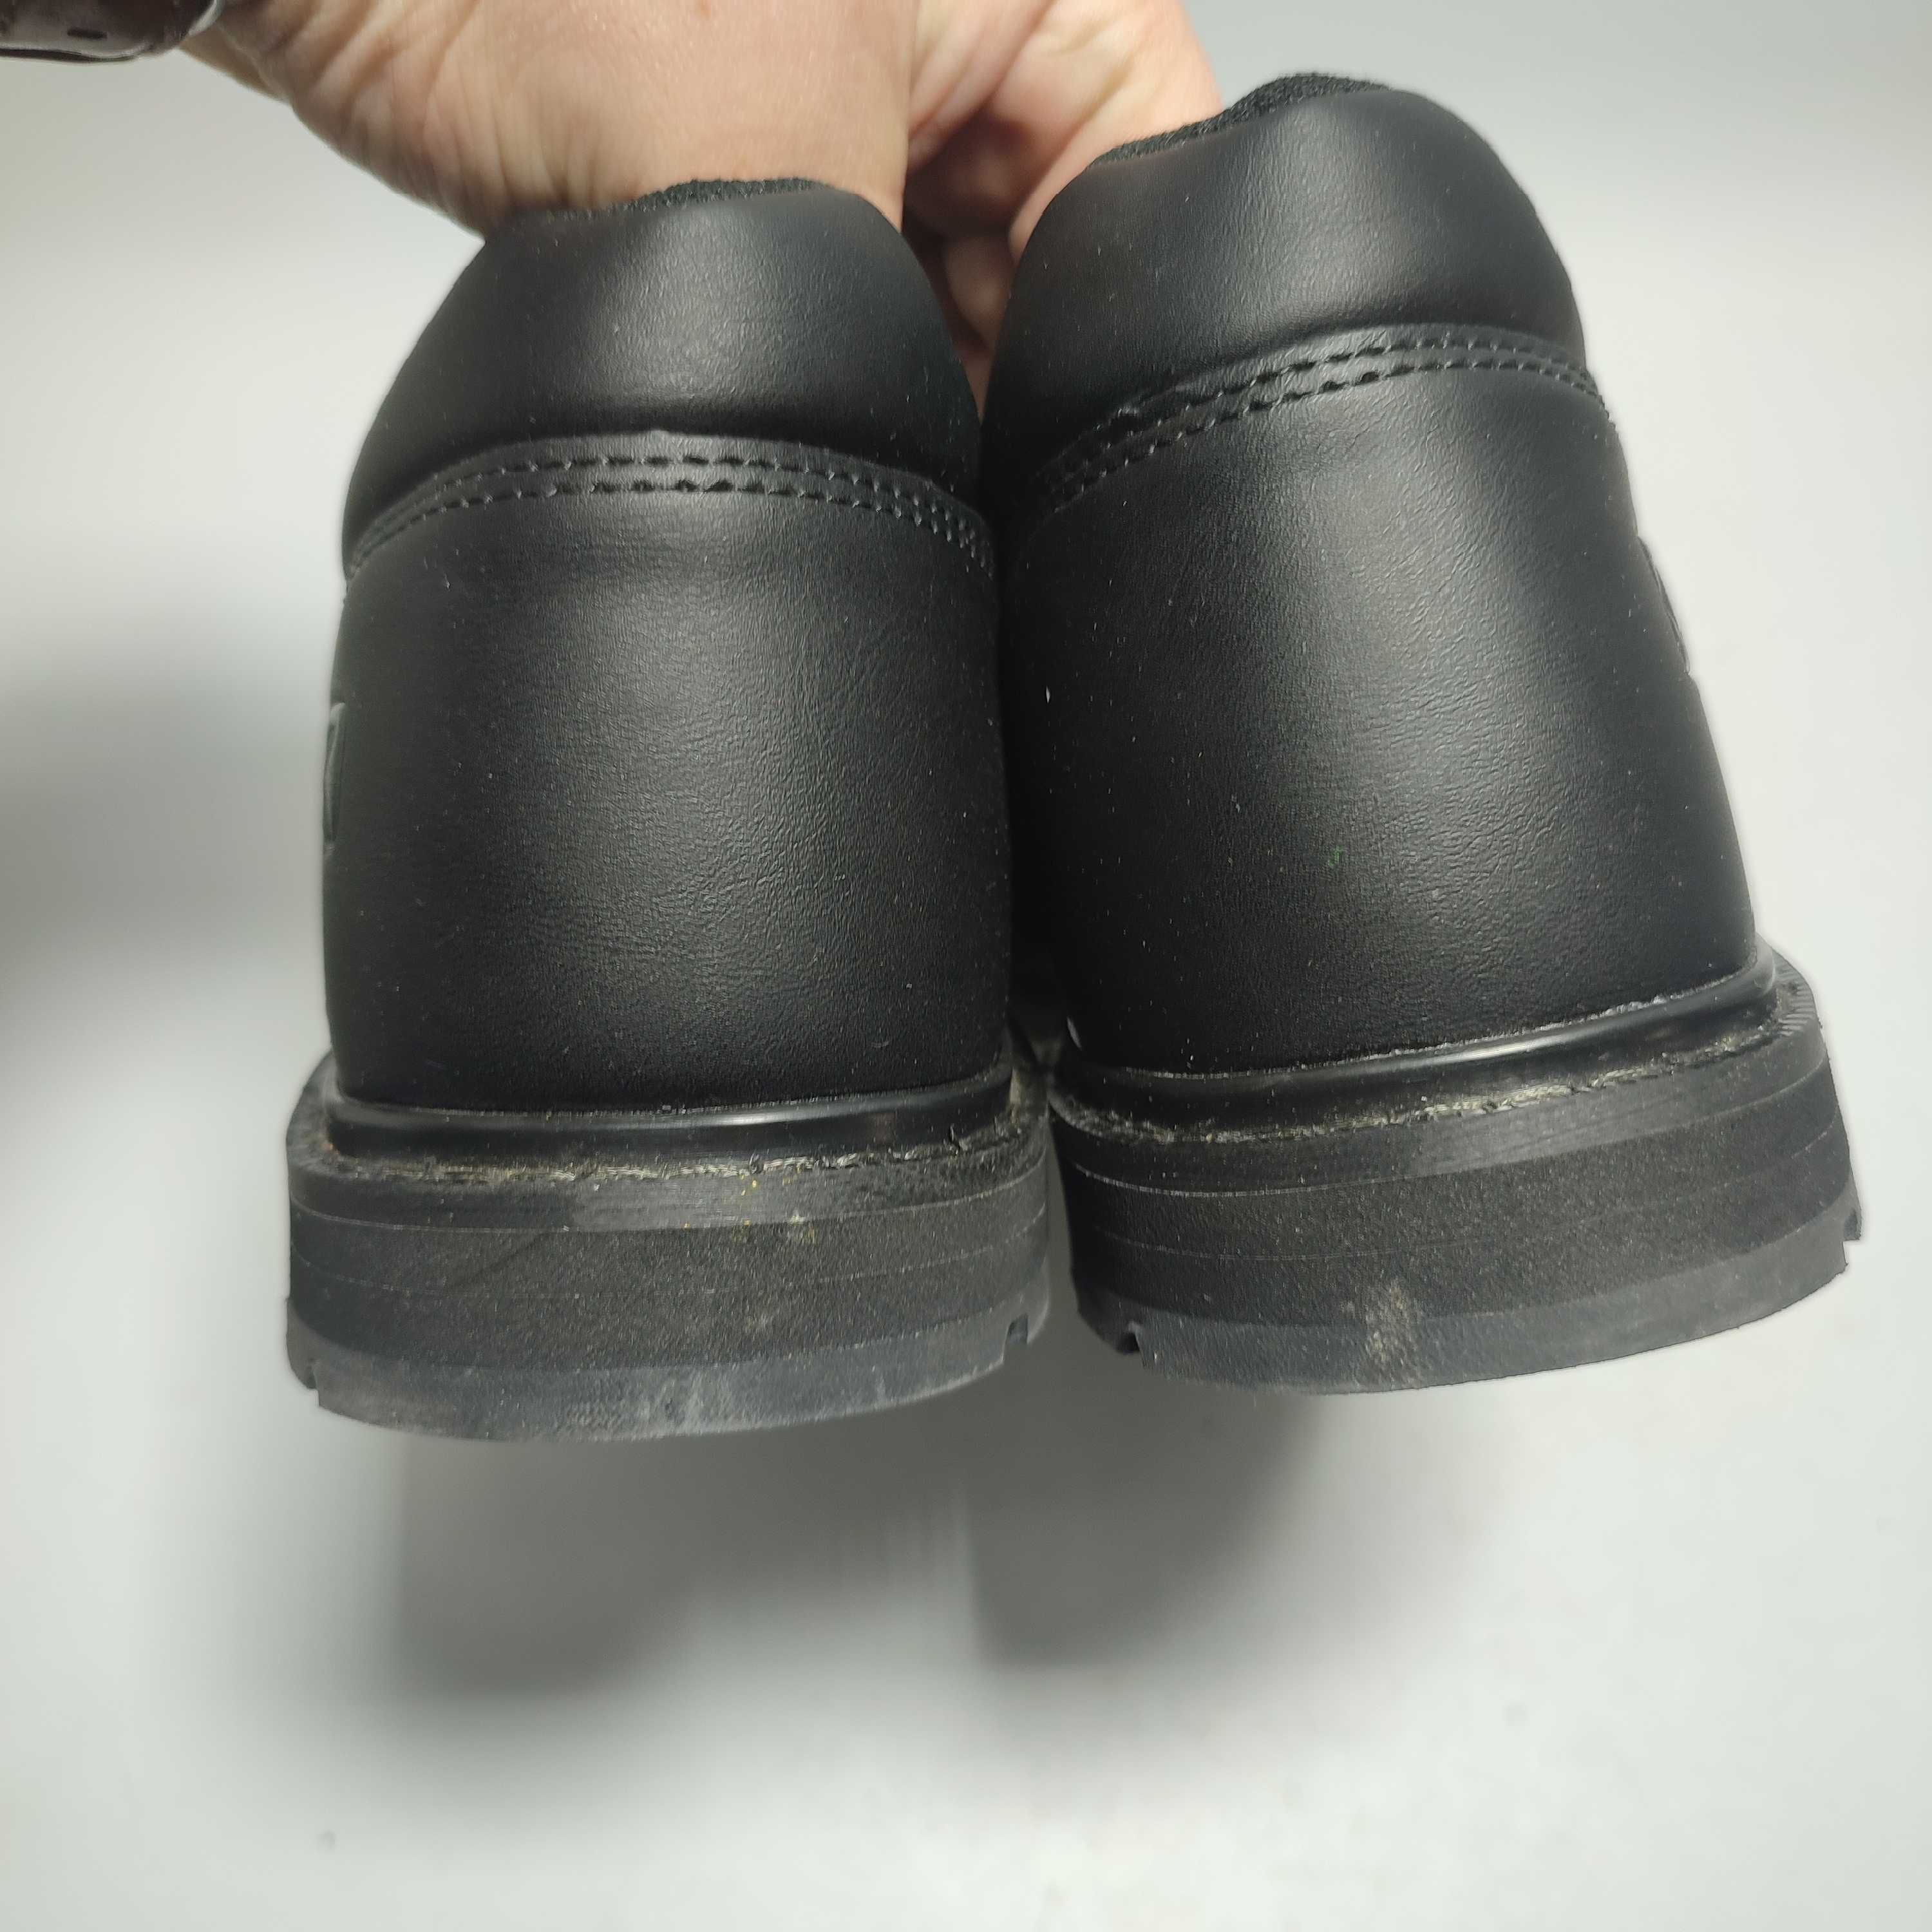 Buty robocze półbuty wsuwane DAKOTA S1 rozmiar 45 JAK NOWE